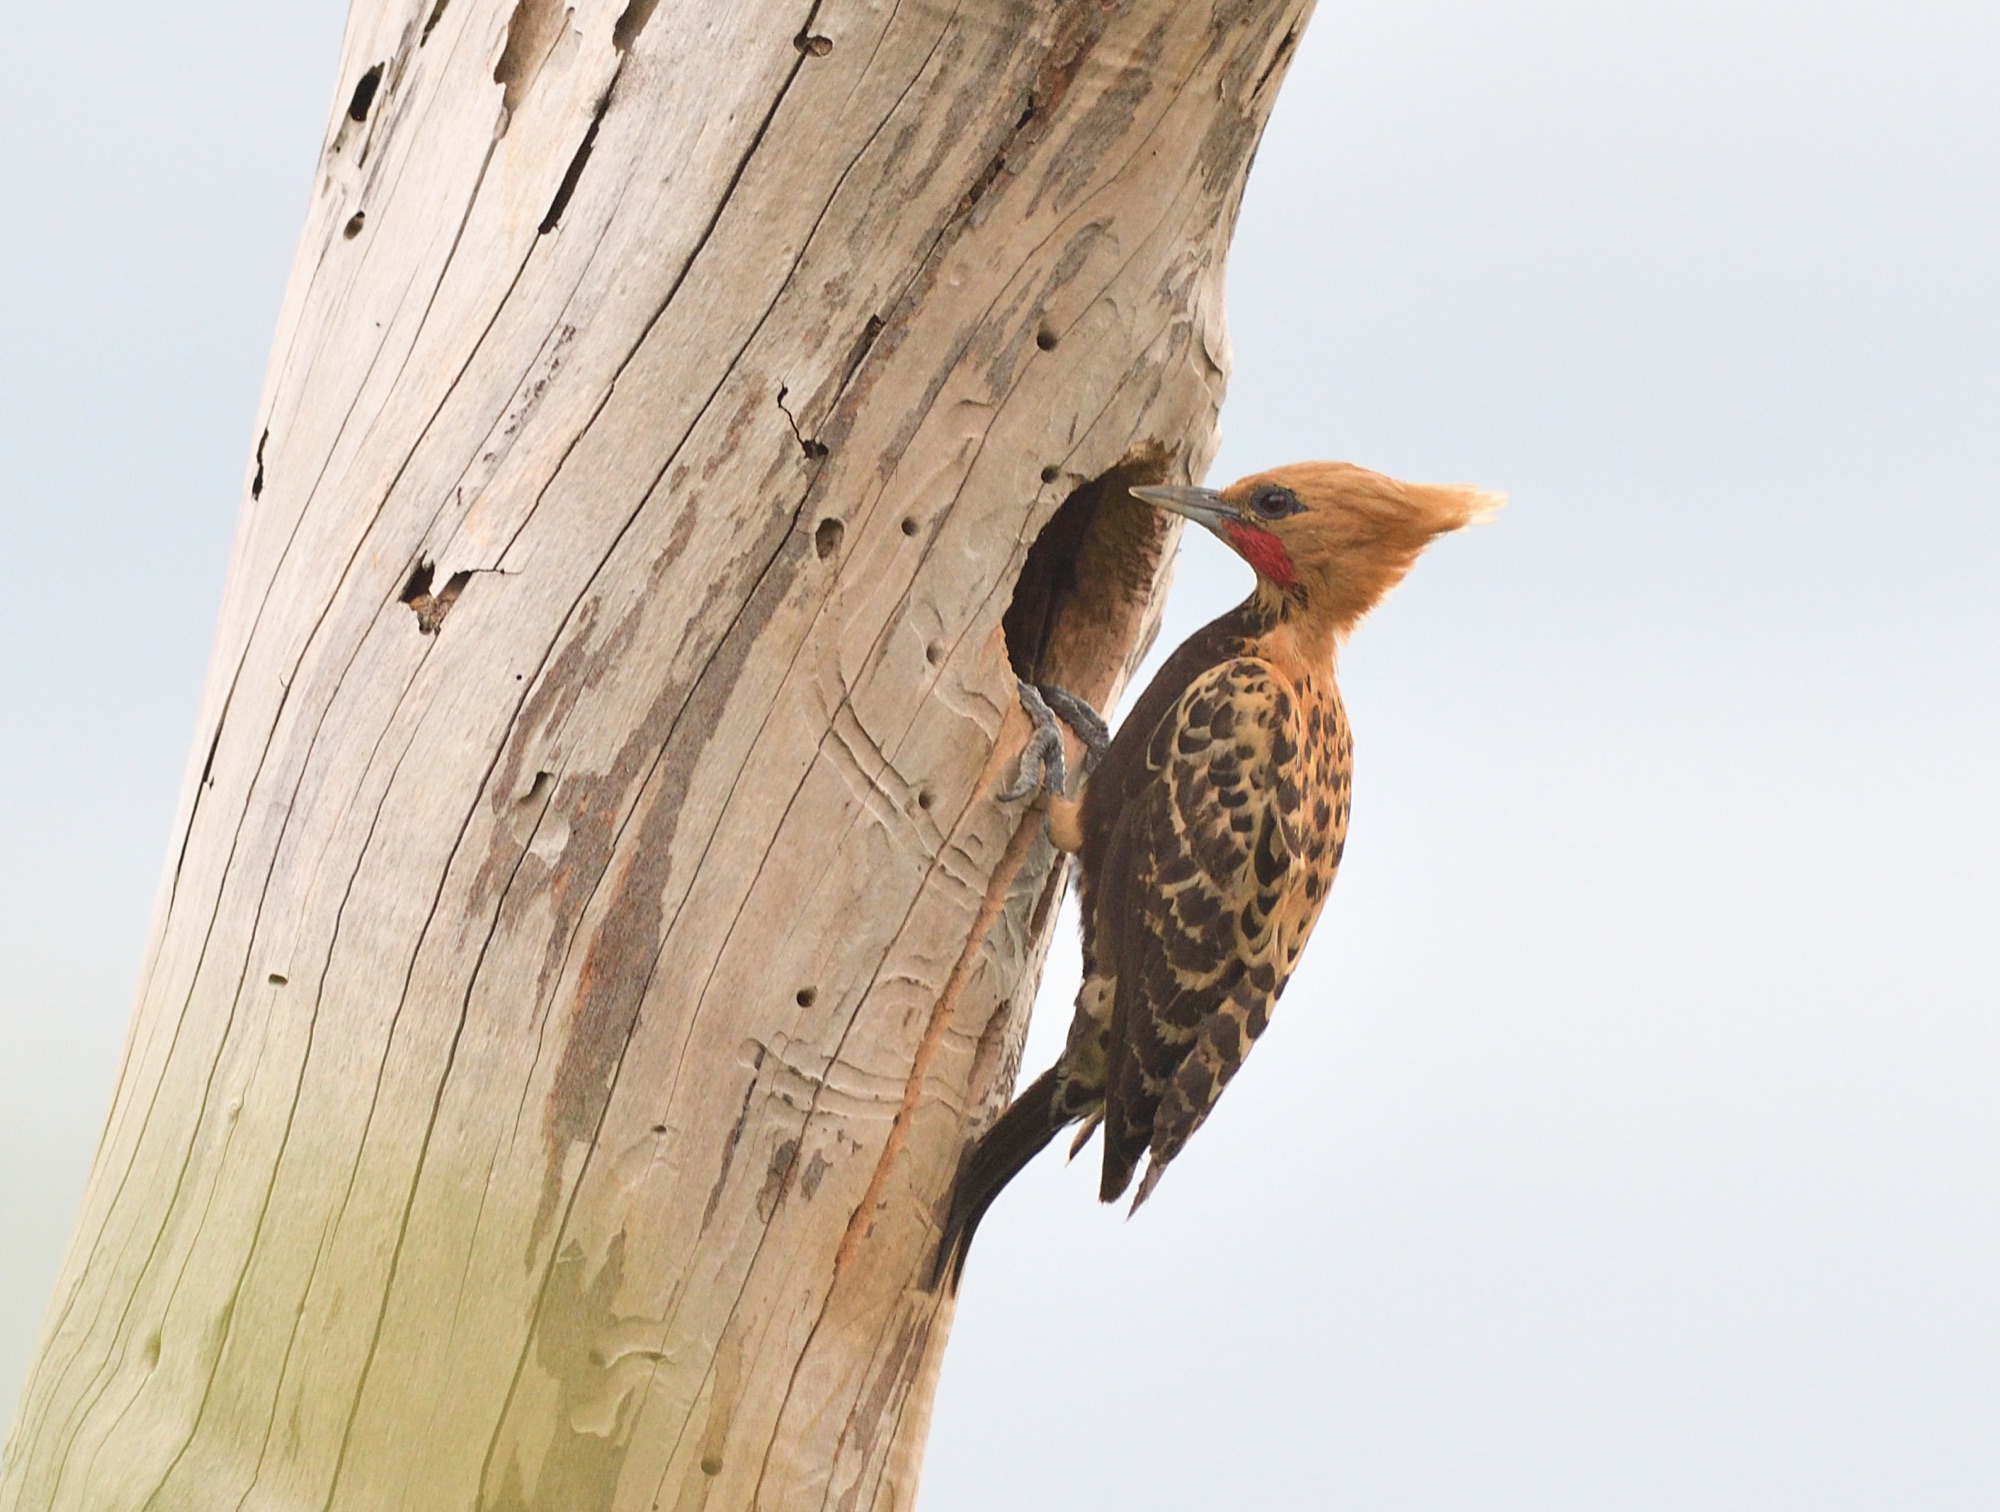 ochre-backed woodpecker